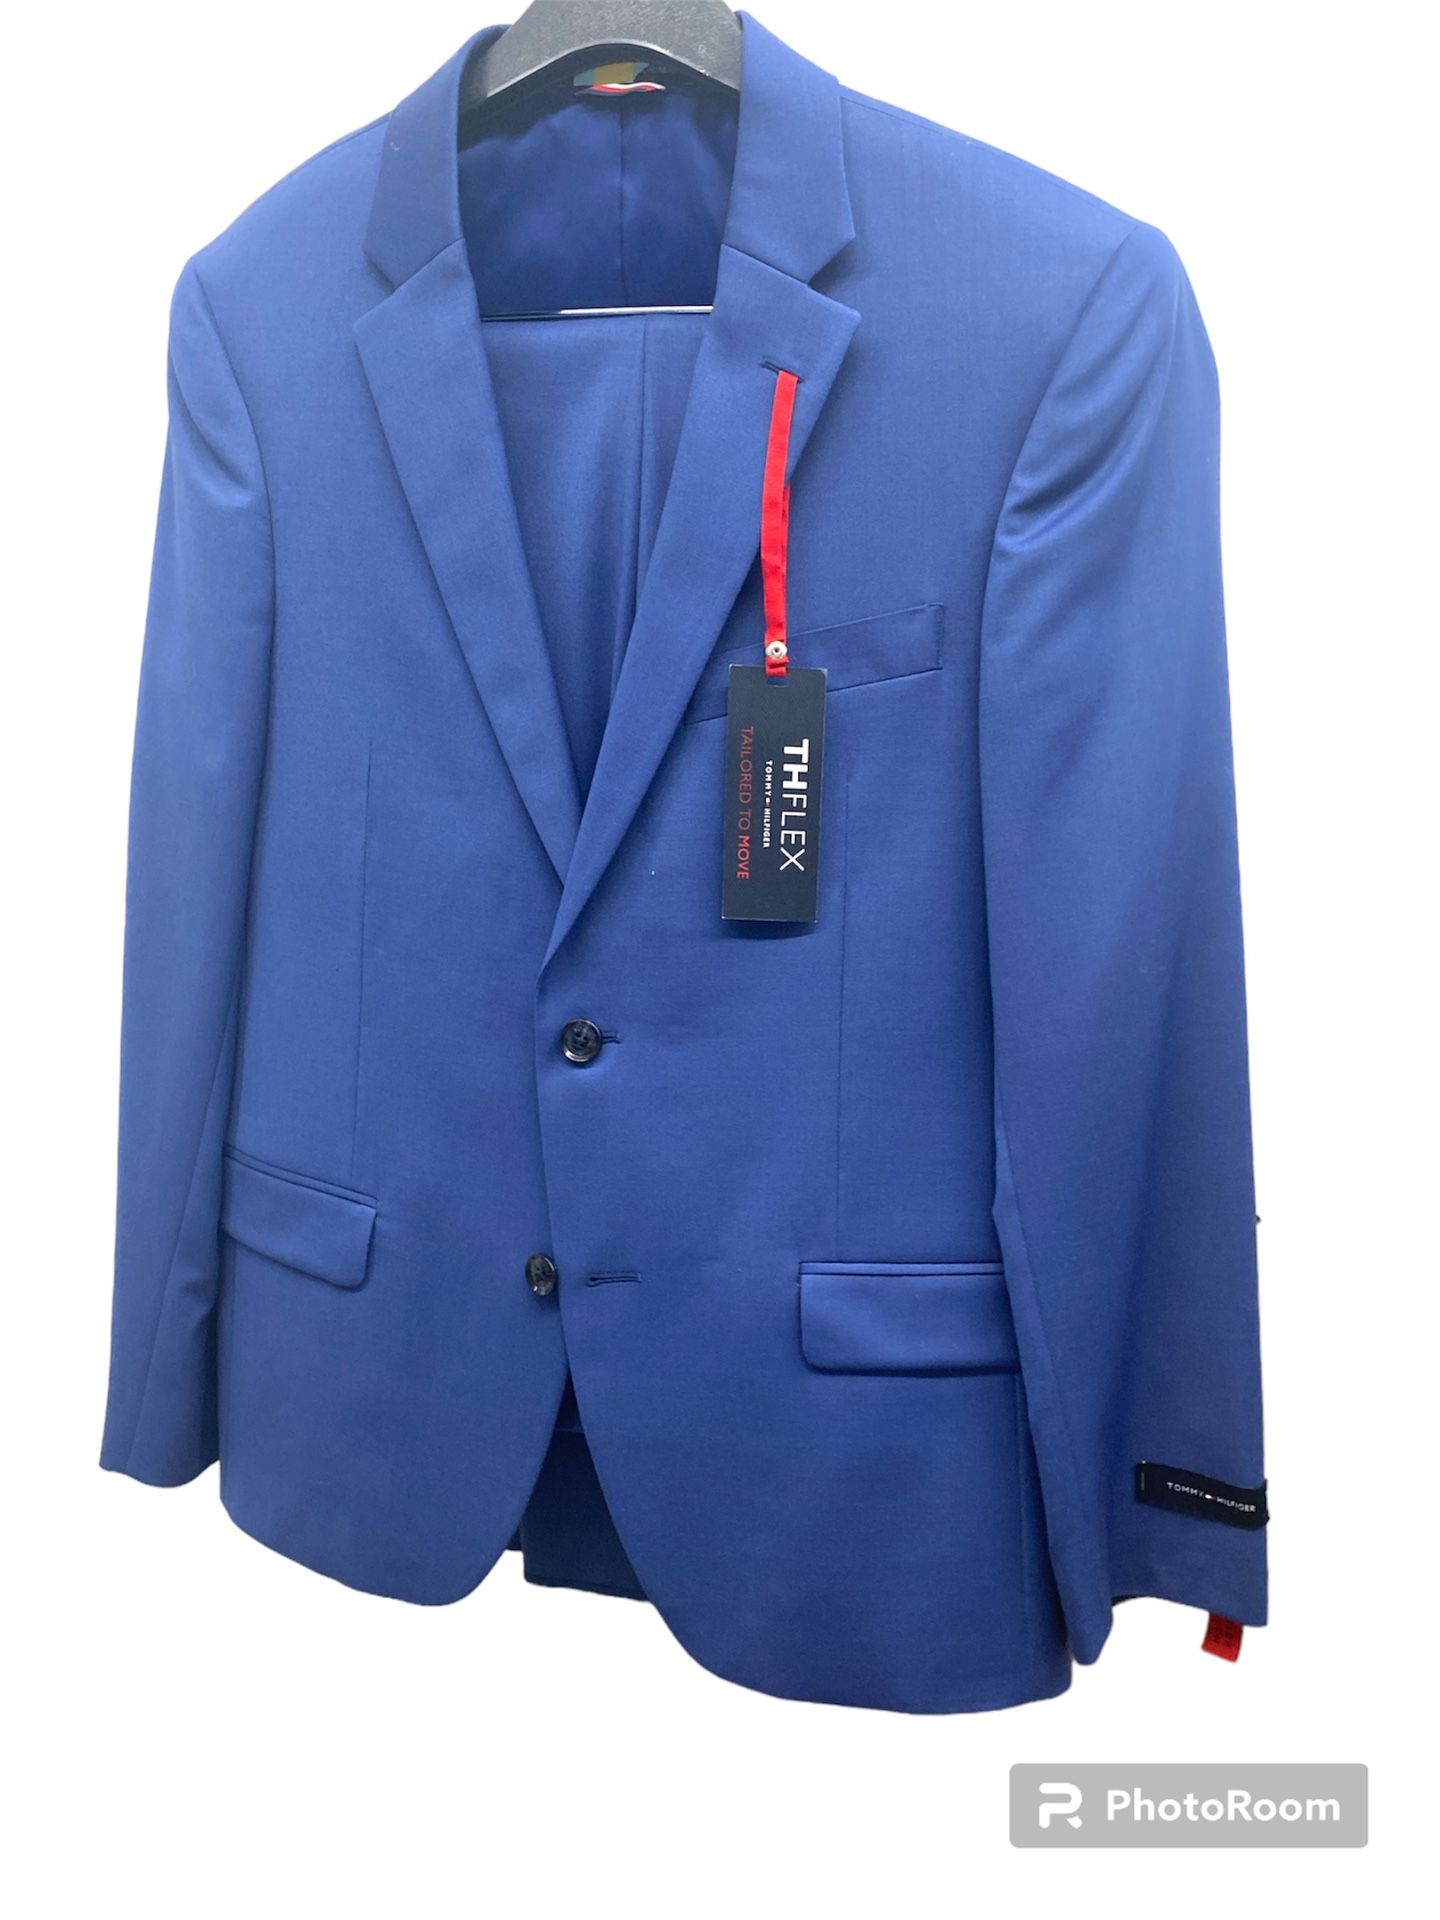 New TOMMY hilfiger SUIT Blue  pants & jacket 